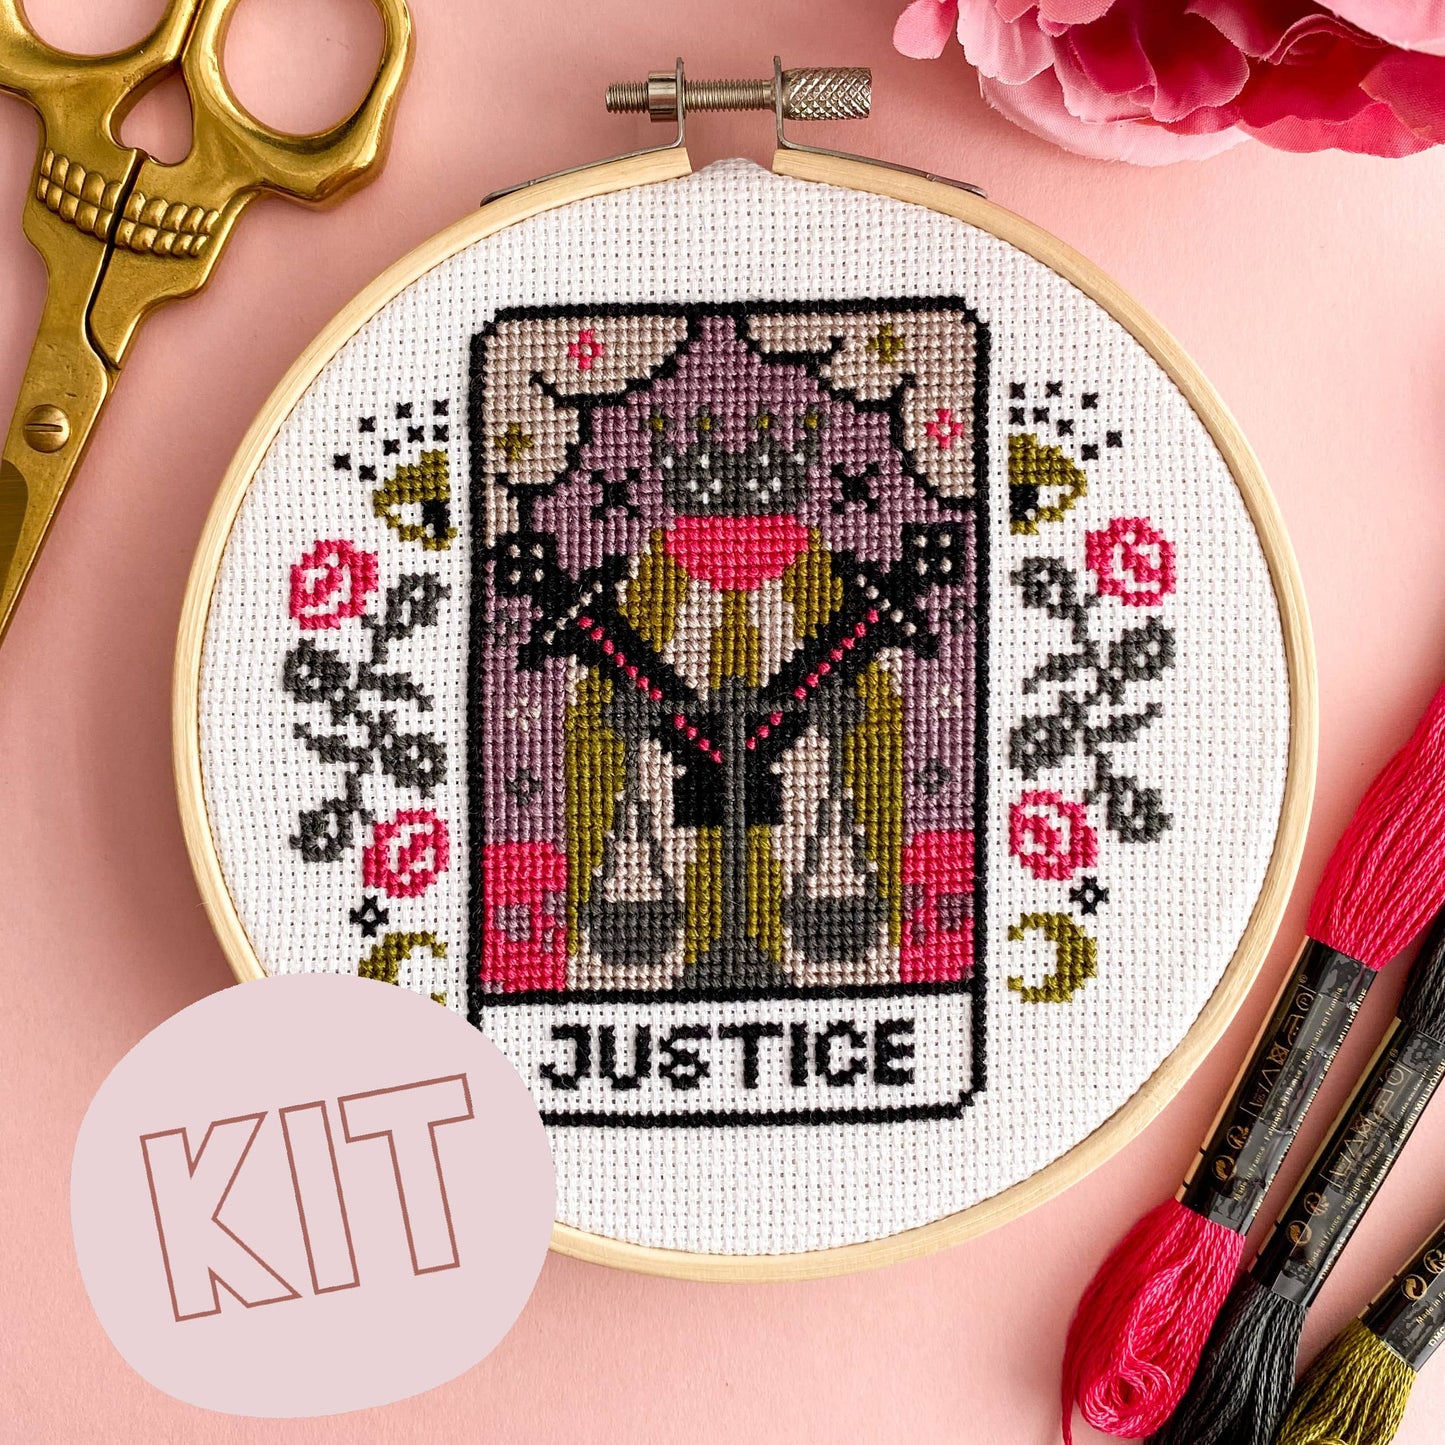 Justice Tarot Card Cross Stitch Kit